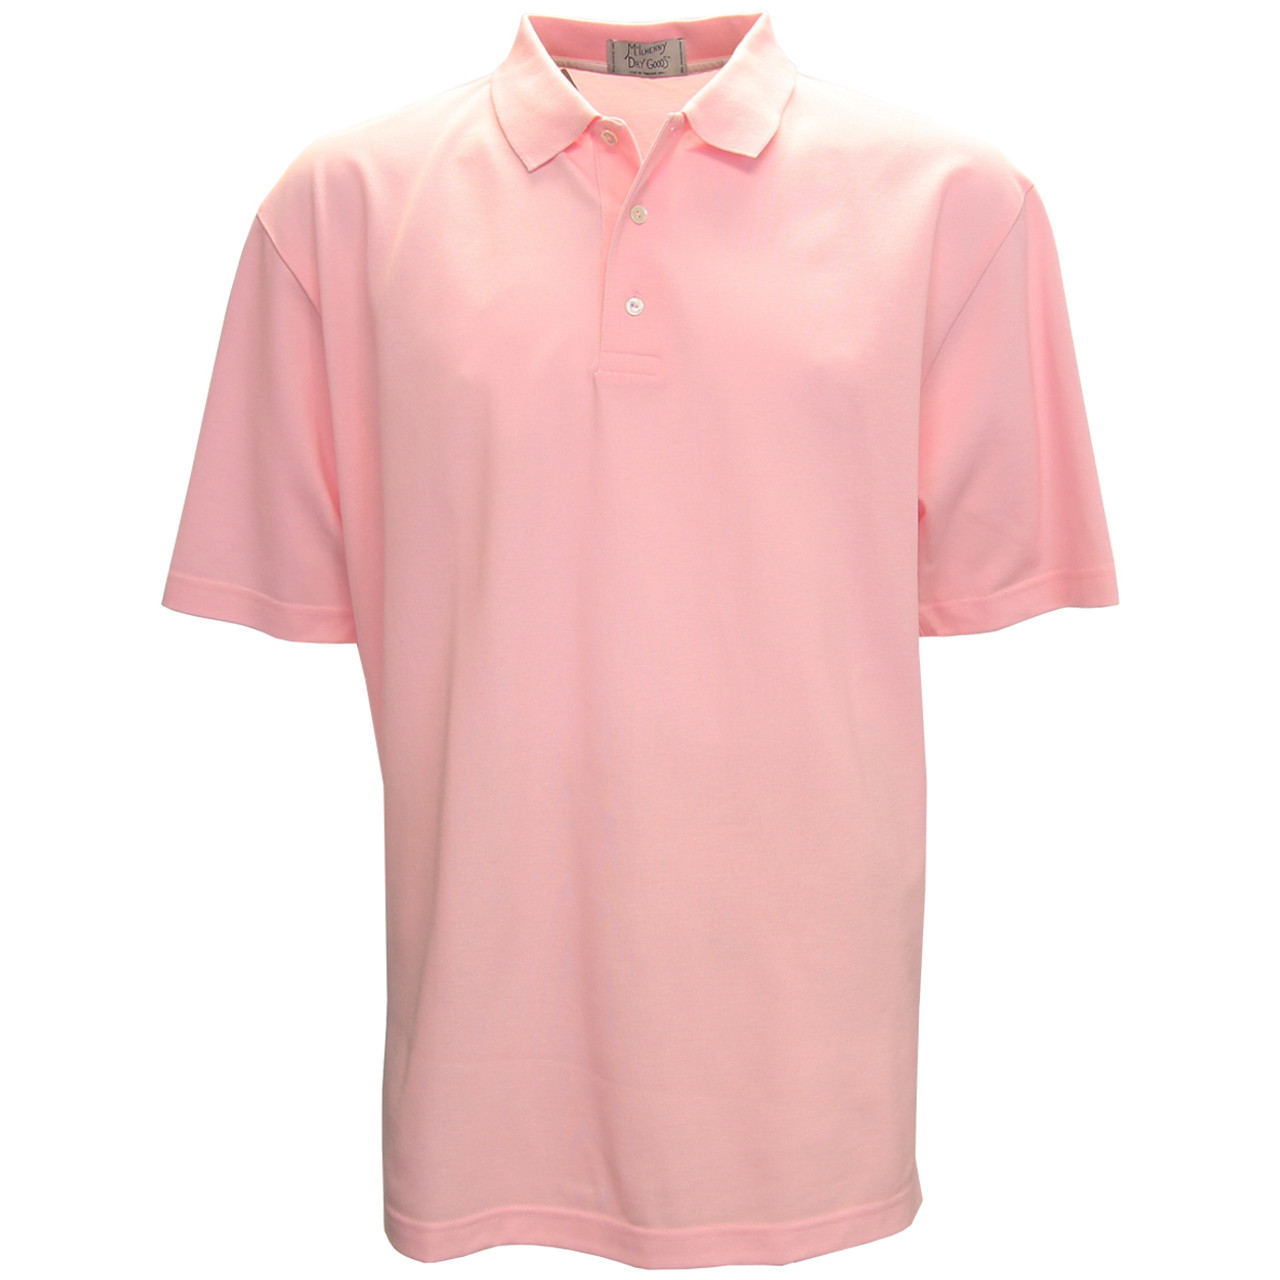 Tabasco Solid Pique Polo Golf Shirt - GolfEtail.com